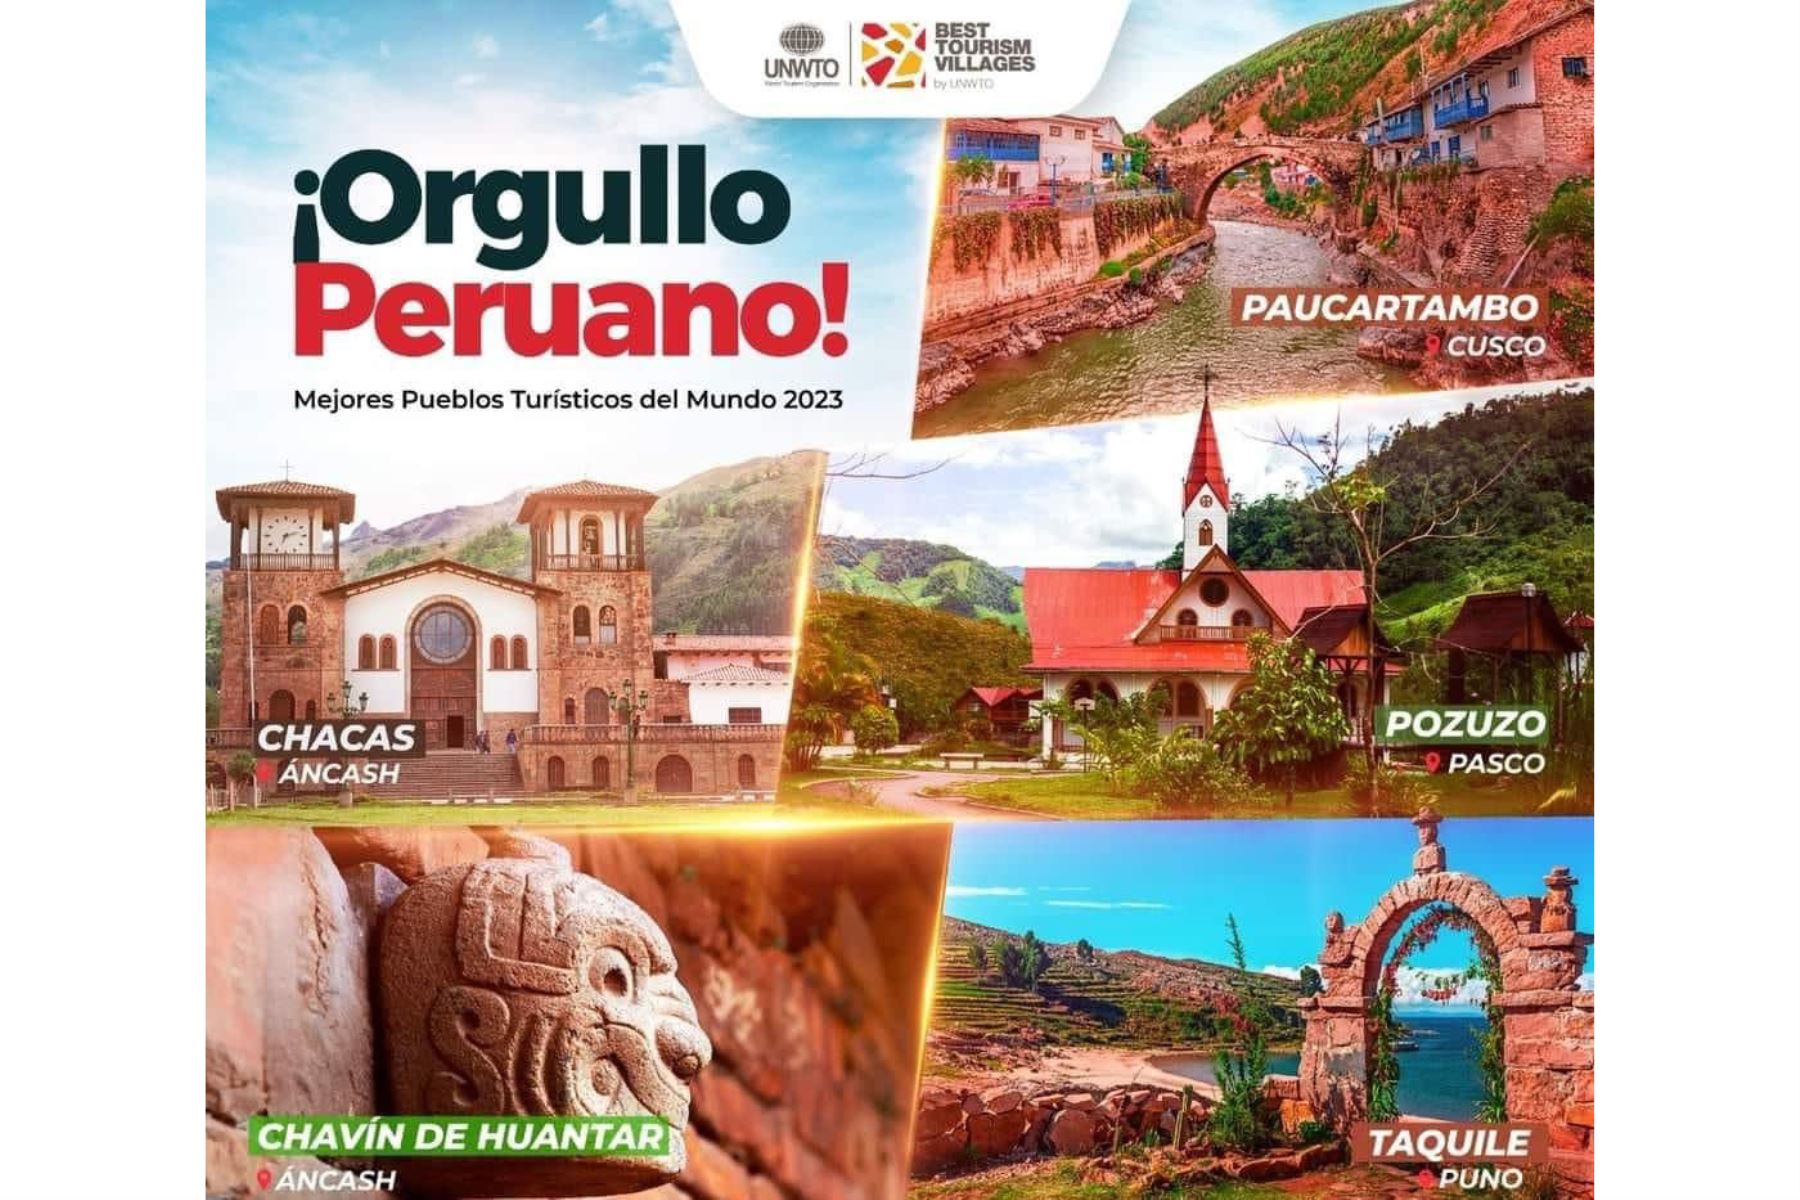 Organización Mundial de Turismo distinguió a Pozuzo Taquile, Chacas, Chavín de Huantar y Paucartambo como los "Mejores Pueblos Turísticos del Mundo 2023". ANDINA/Difusión